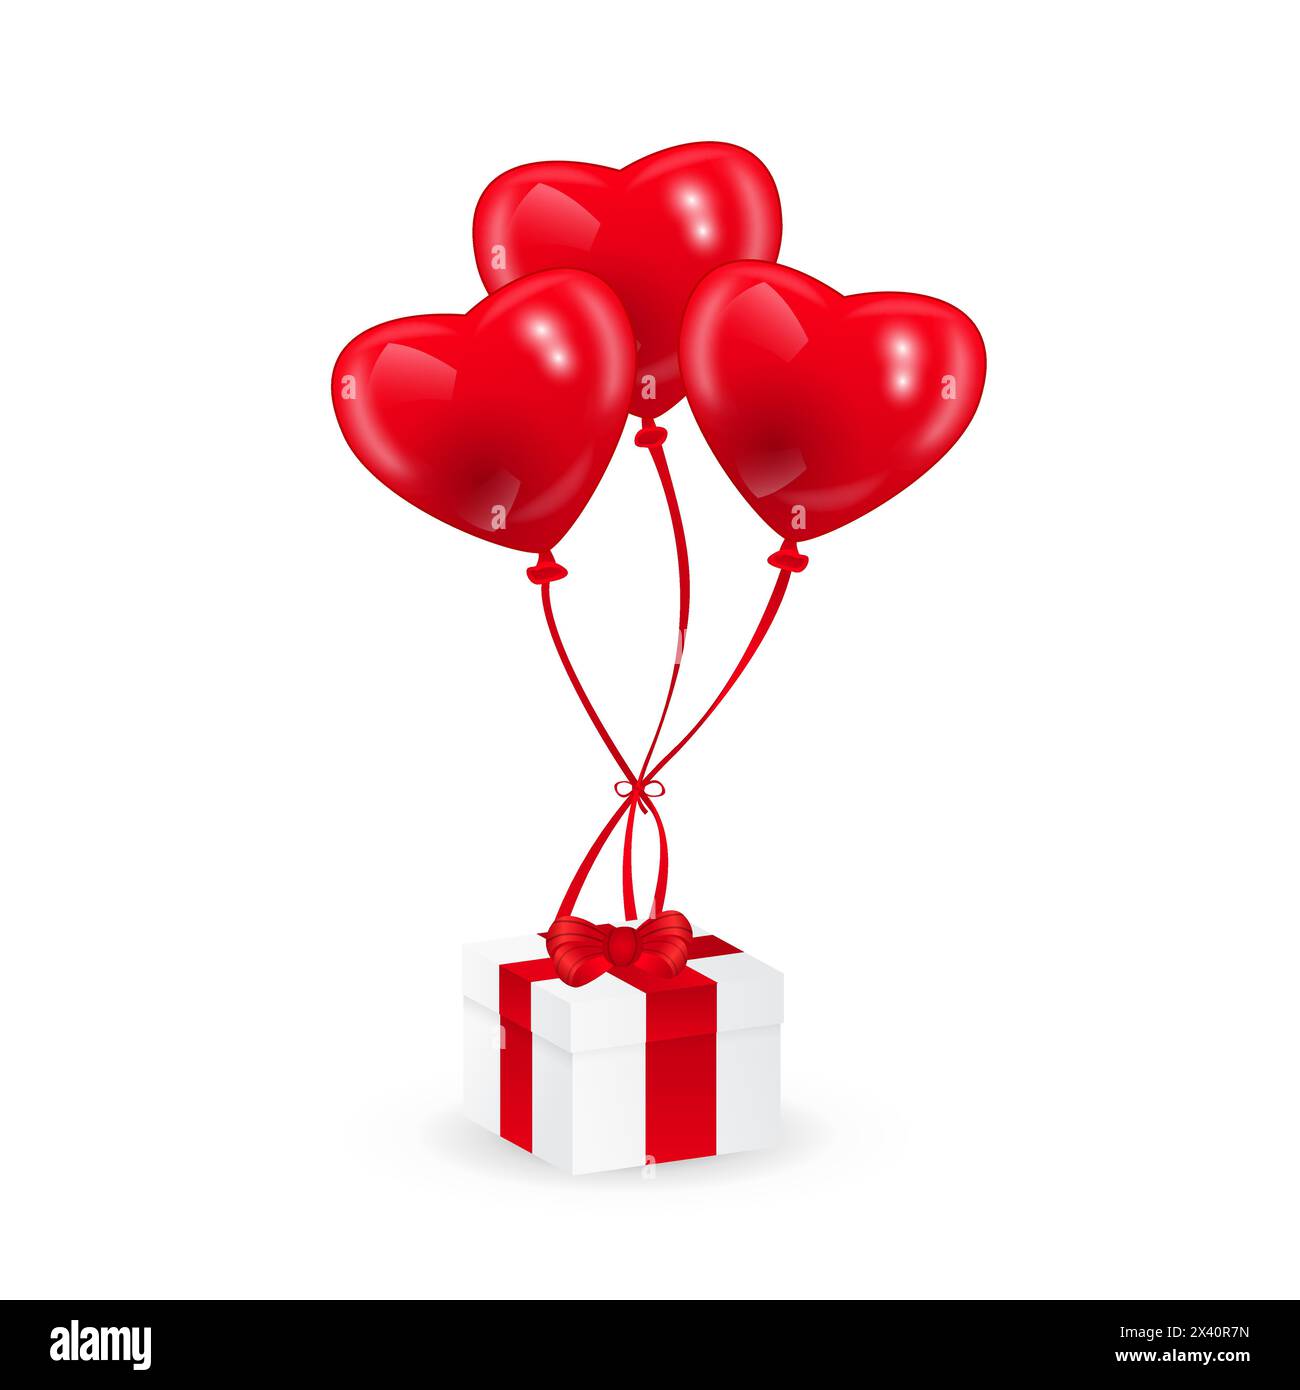 Bild von herzförmigen roten Ballons und einer Geschenkbox, Vektor-EPS-10-Illustration Stock Vektor